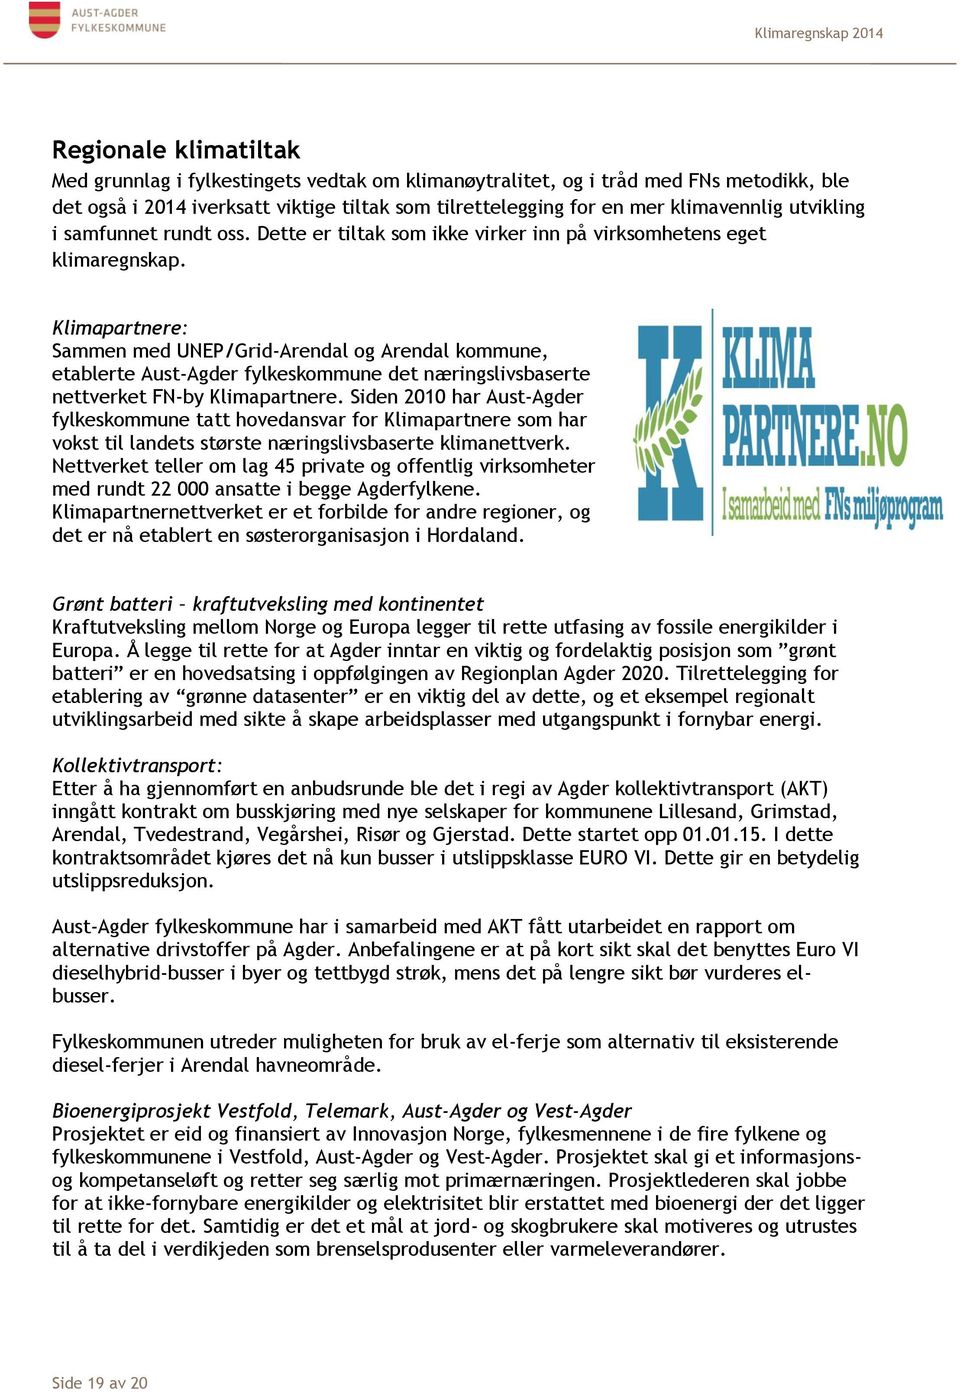 Klimapartnere: Sammen med UNEP/Grid-Arendal og Arendal kommune, etablerte Aust-Agder fylkeskommune det næringslivsbaserte nettverket FN-by Klimapartnere.